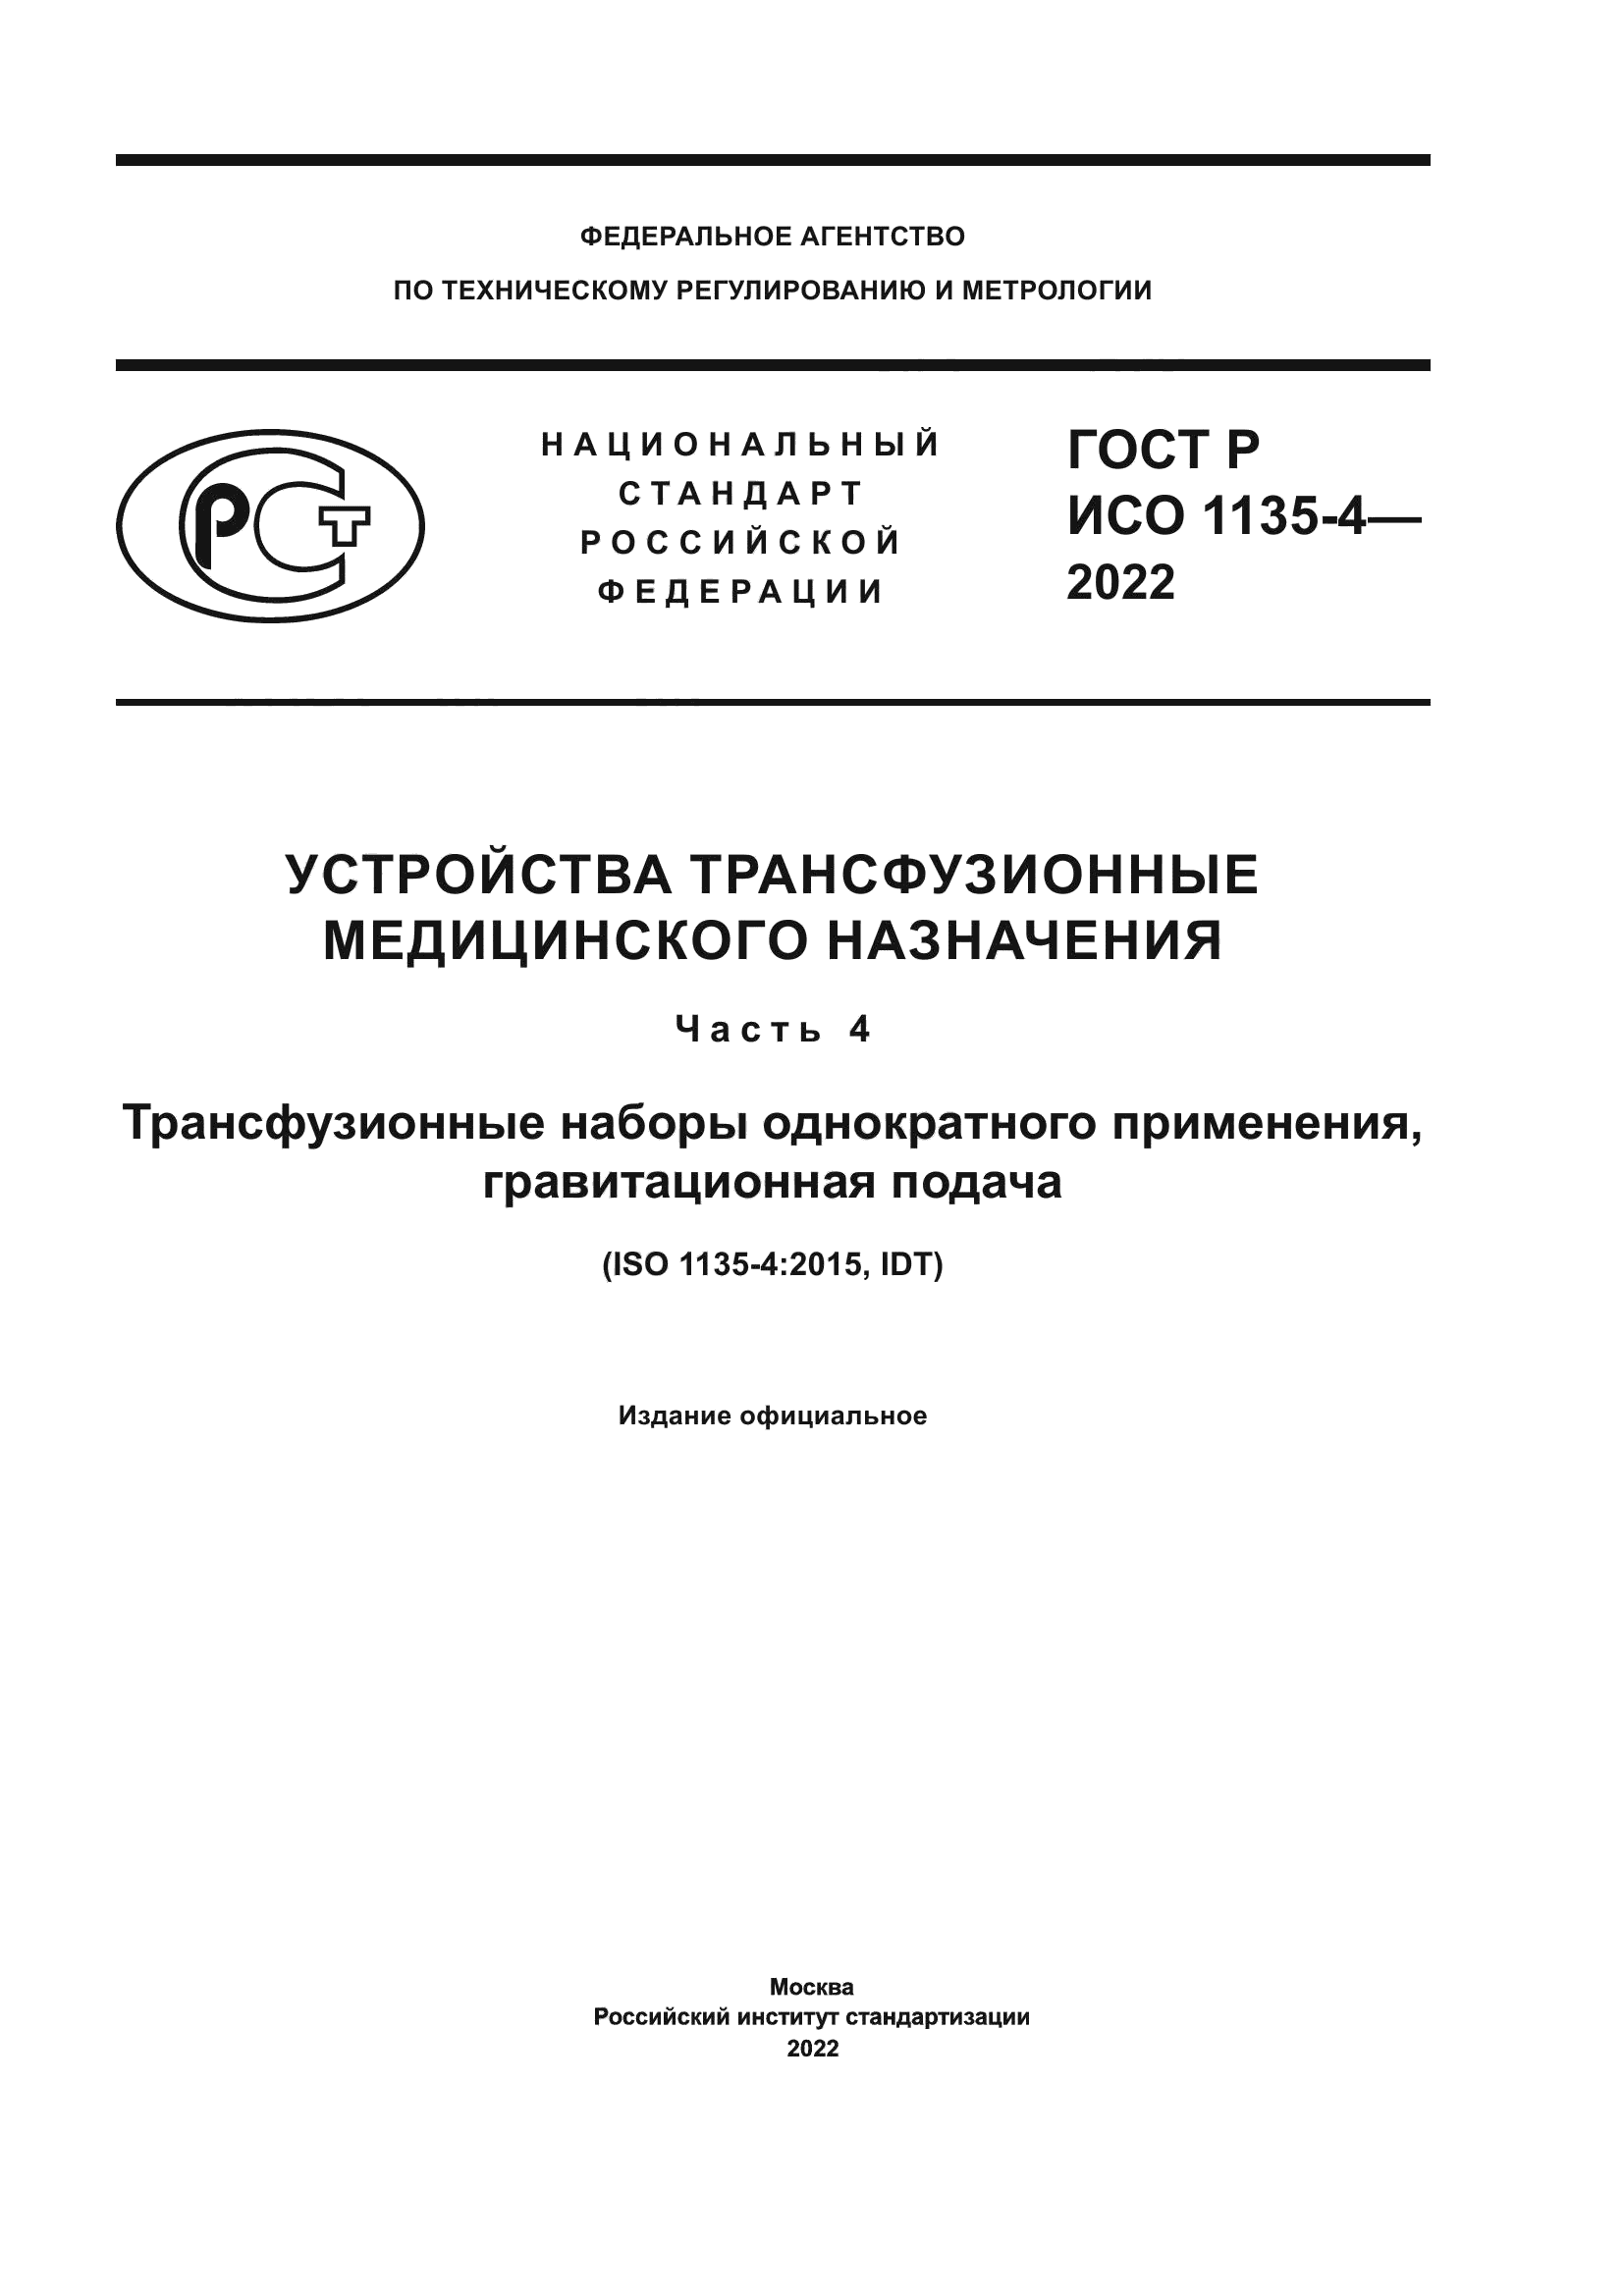 ГОСТ Р ИСО 1135-4-2022